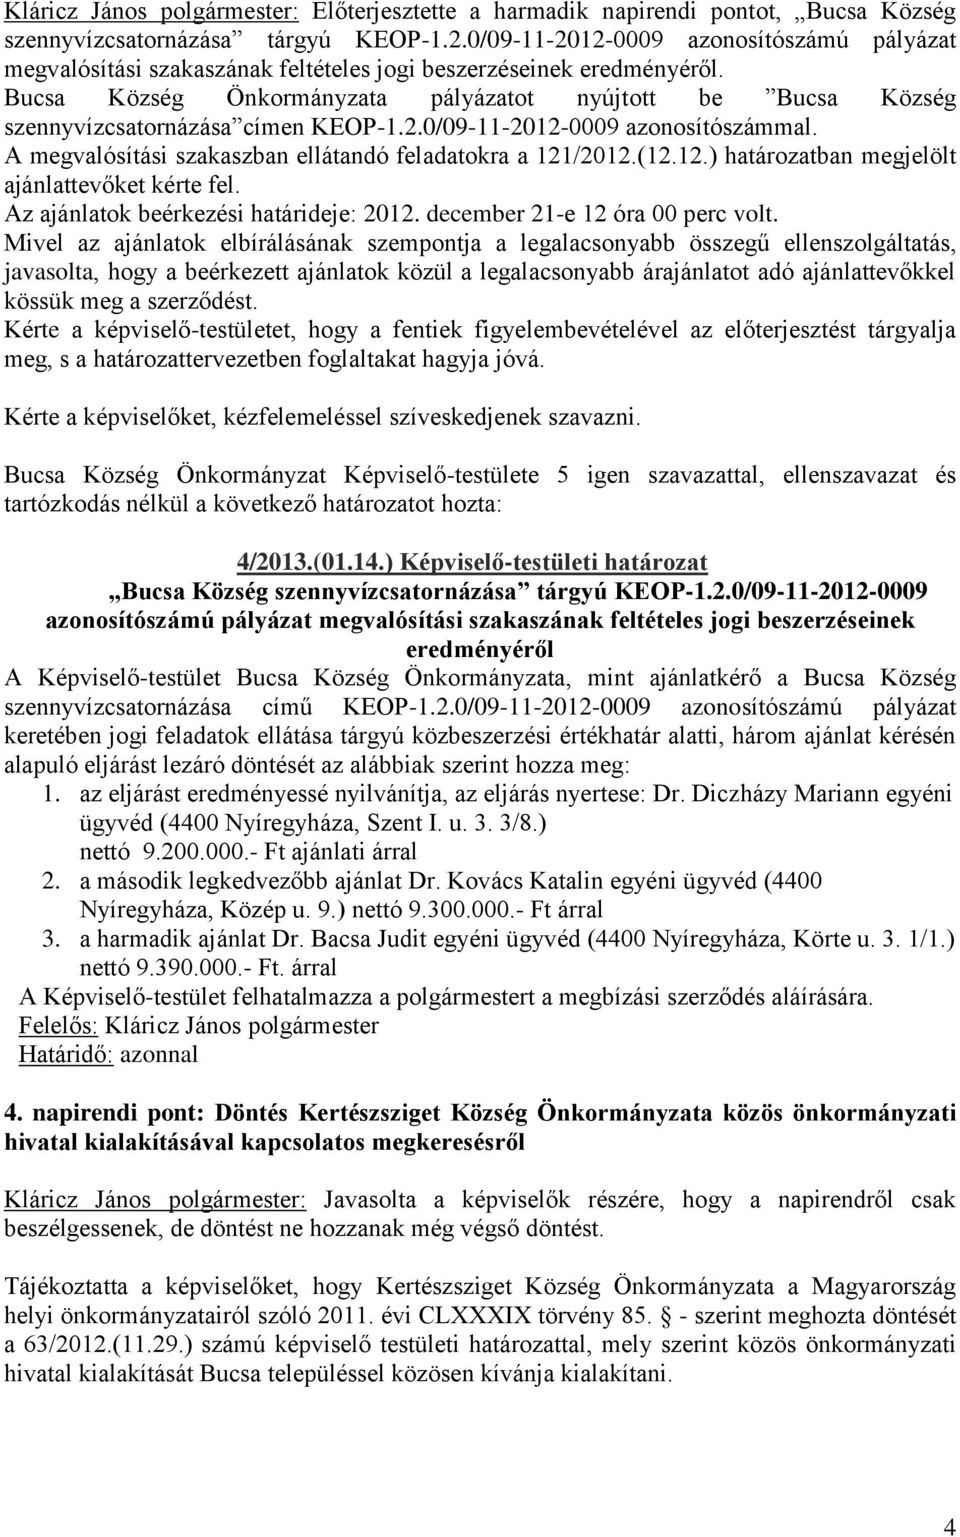 Bucsa Község Önkormányzata pályázatot nyújtott be Bucsa Község szennyvízcsatornázása címen KEOP-1.2.0/09-11-2012-0009 azonosítószámmal. A megvalósítási szakaszban ellátandó feladatokra a 121/2012.(12.